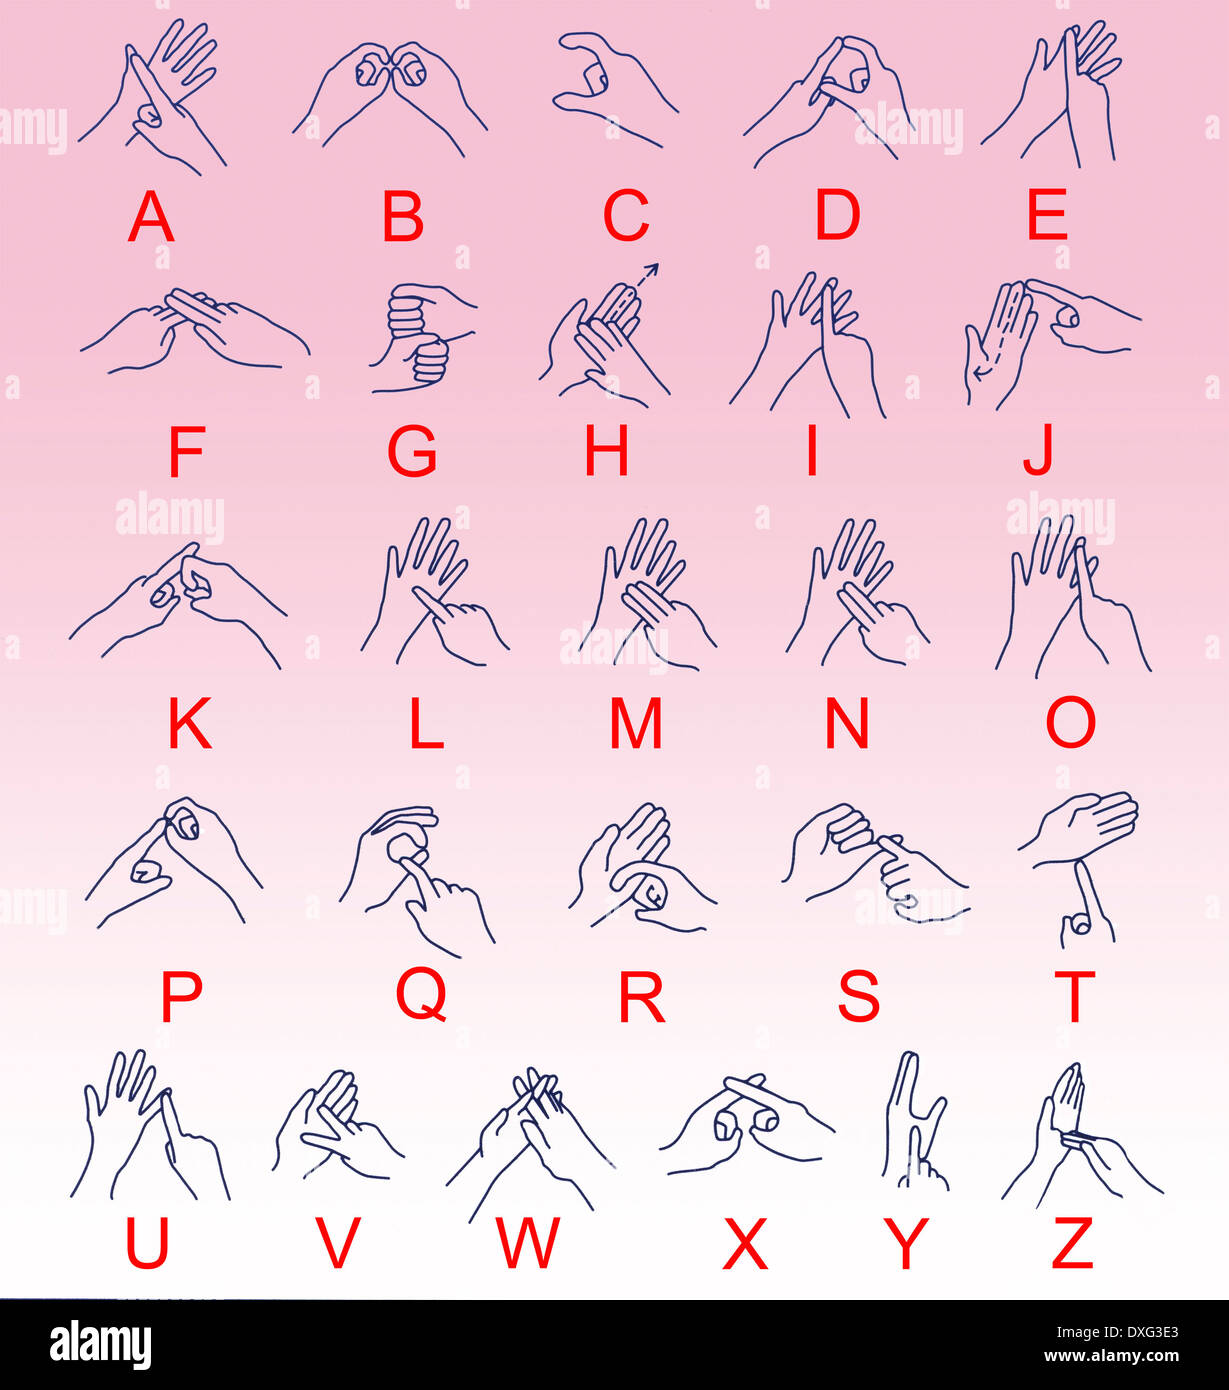 Das Alphabet in Gebärdensprache als Hilfe für Gehörlose. Stockfoto